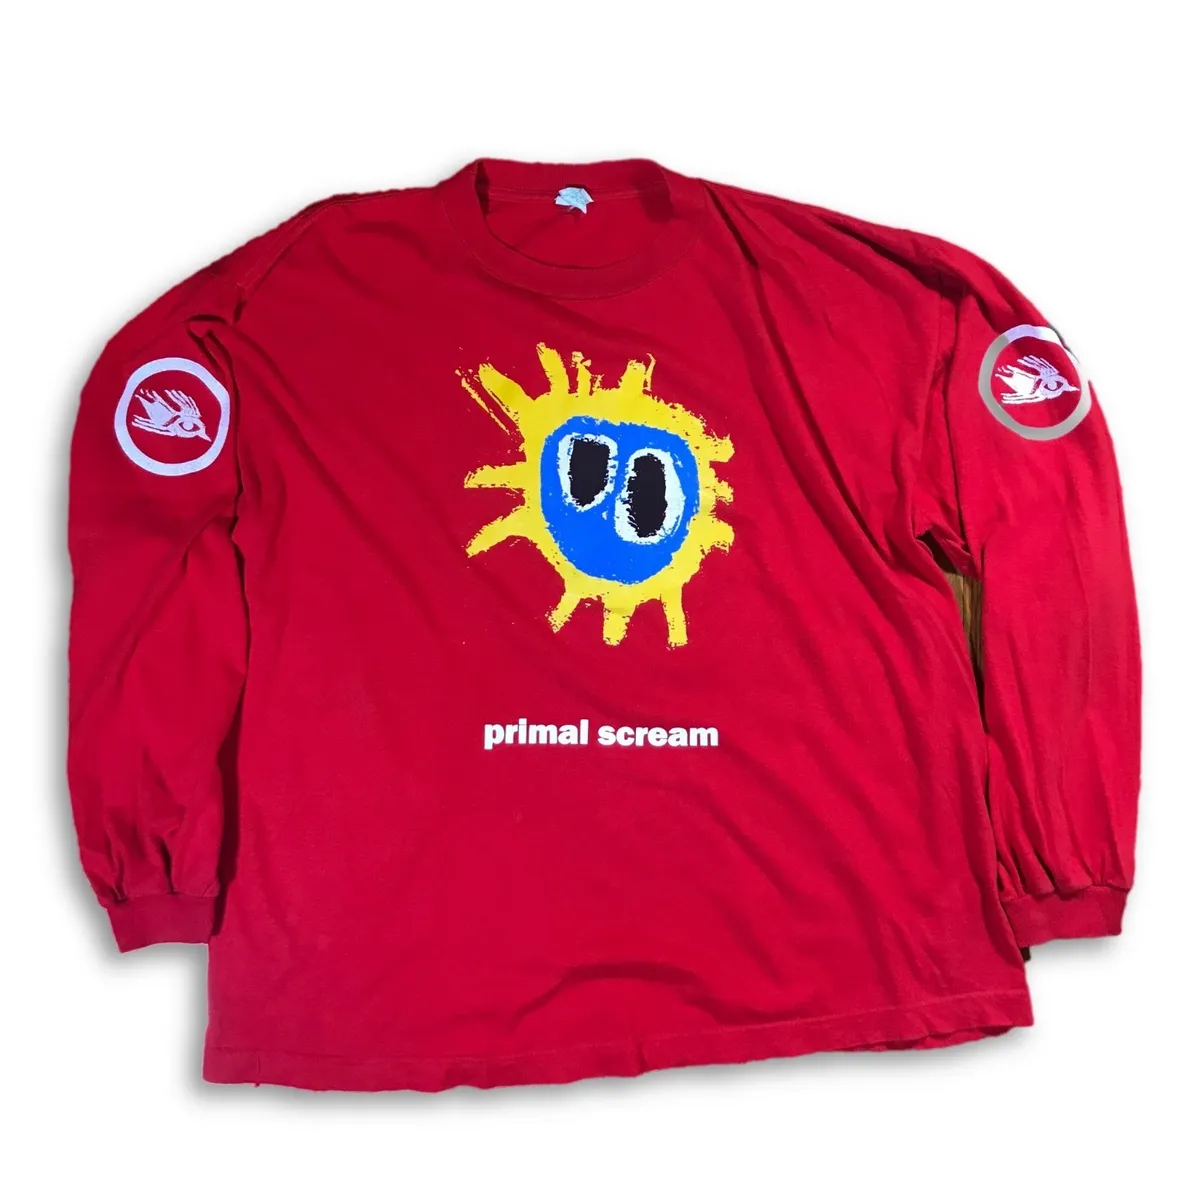 VTG 90's Primal Scream Screamadelica Red Long Sleeve T-Shirt